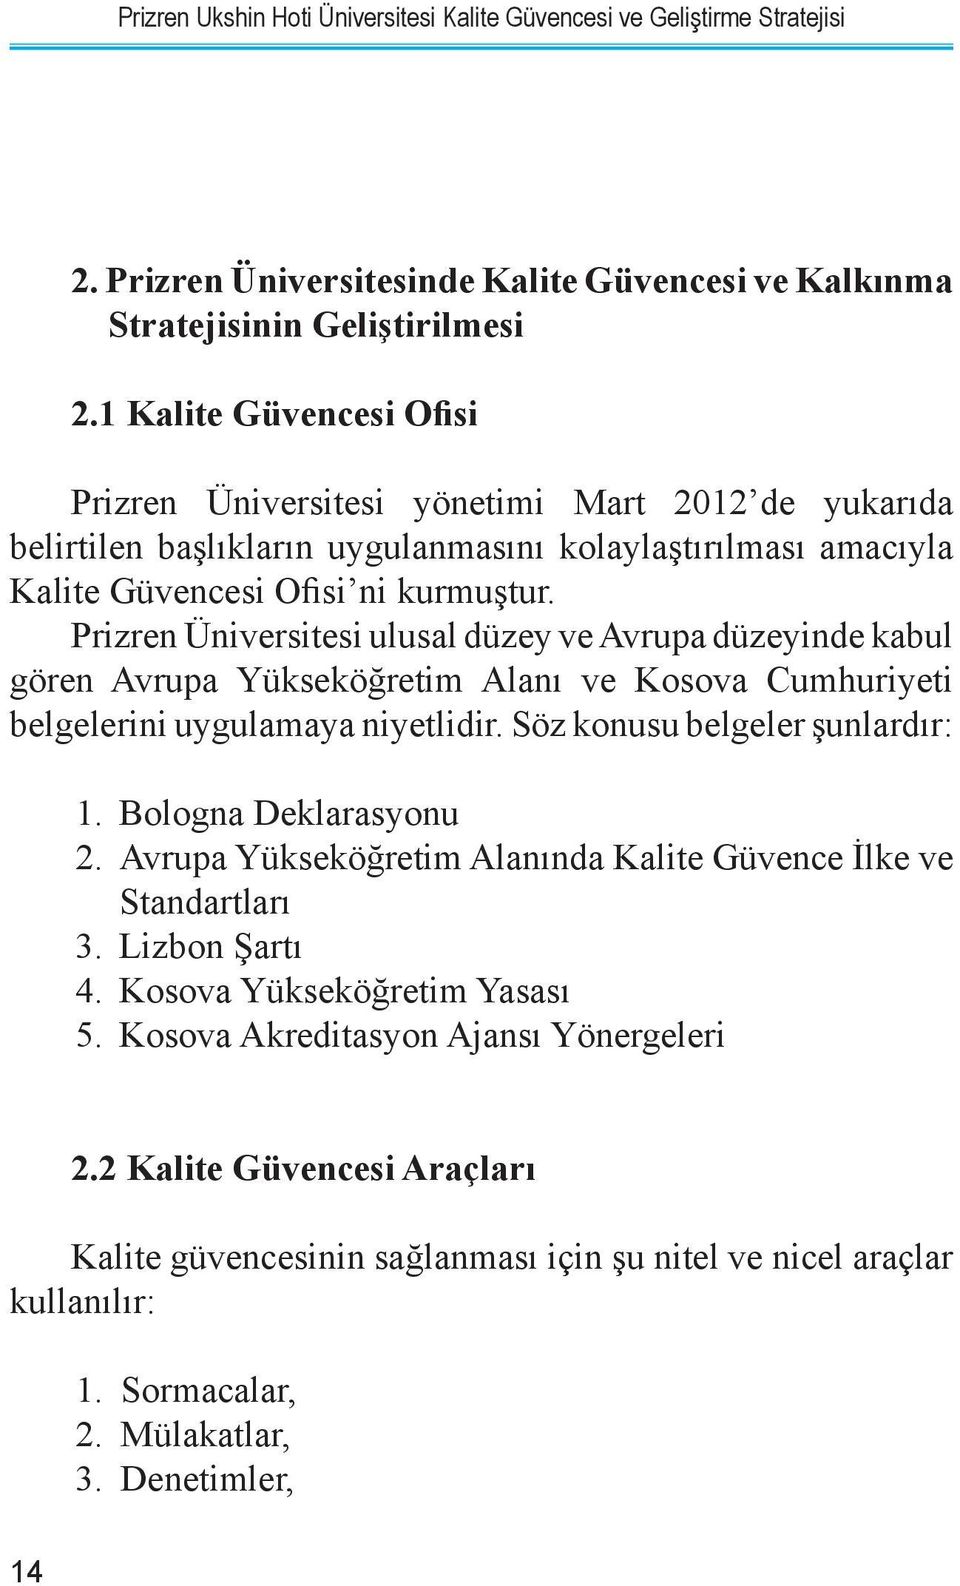 Prizren Üniversitesi ulusal düzey ve Avrupa düzeyinde kabul gören Avrupa Yükseköğretim Alanı ve Kosova Cumhuriyeti belgelerini uygulamaya niyetlidir. Söz konusu belgeler şunlardır: 1.